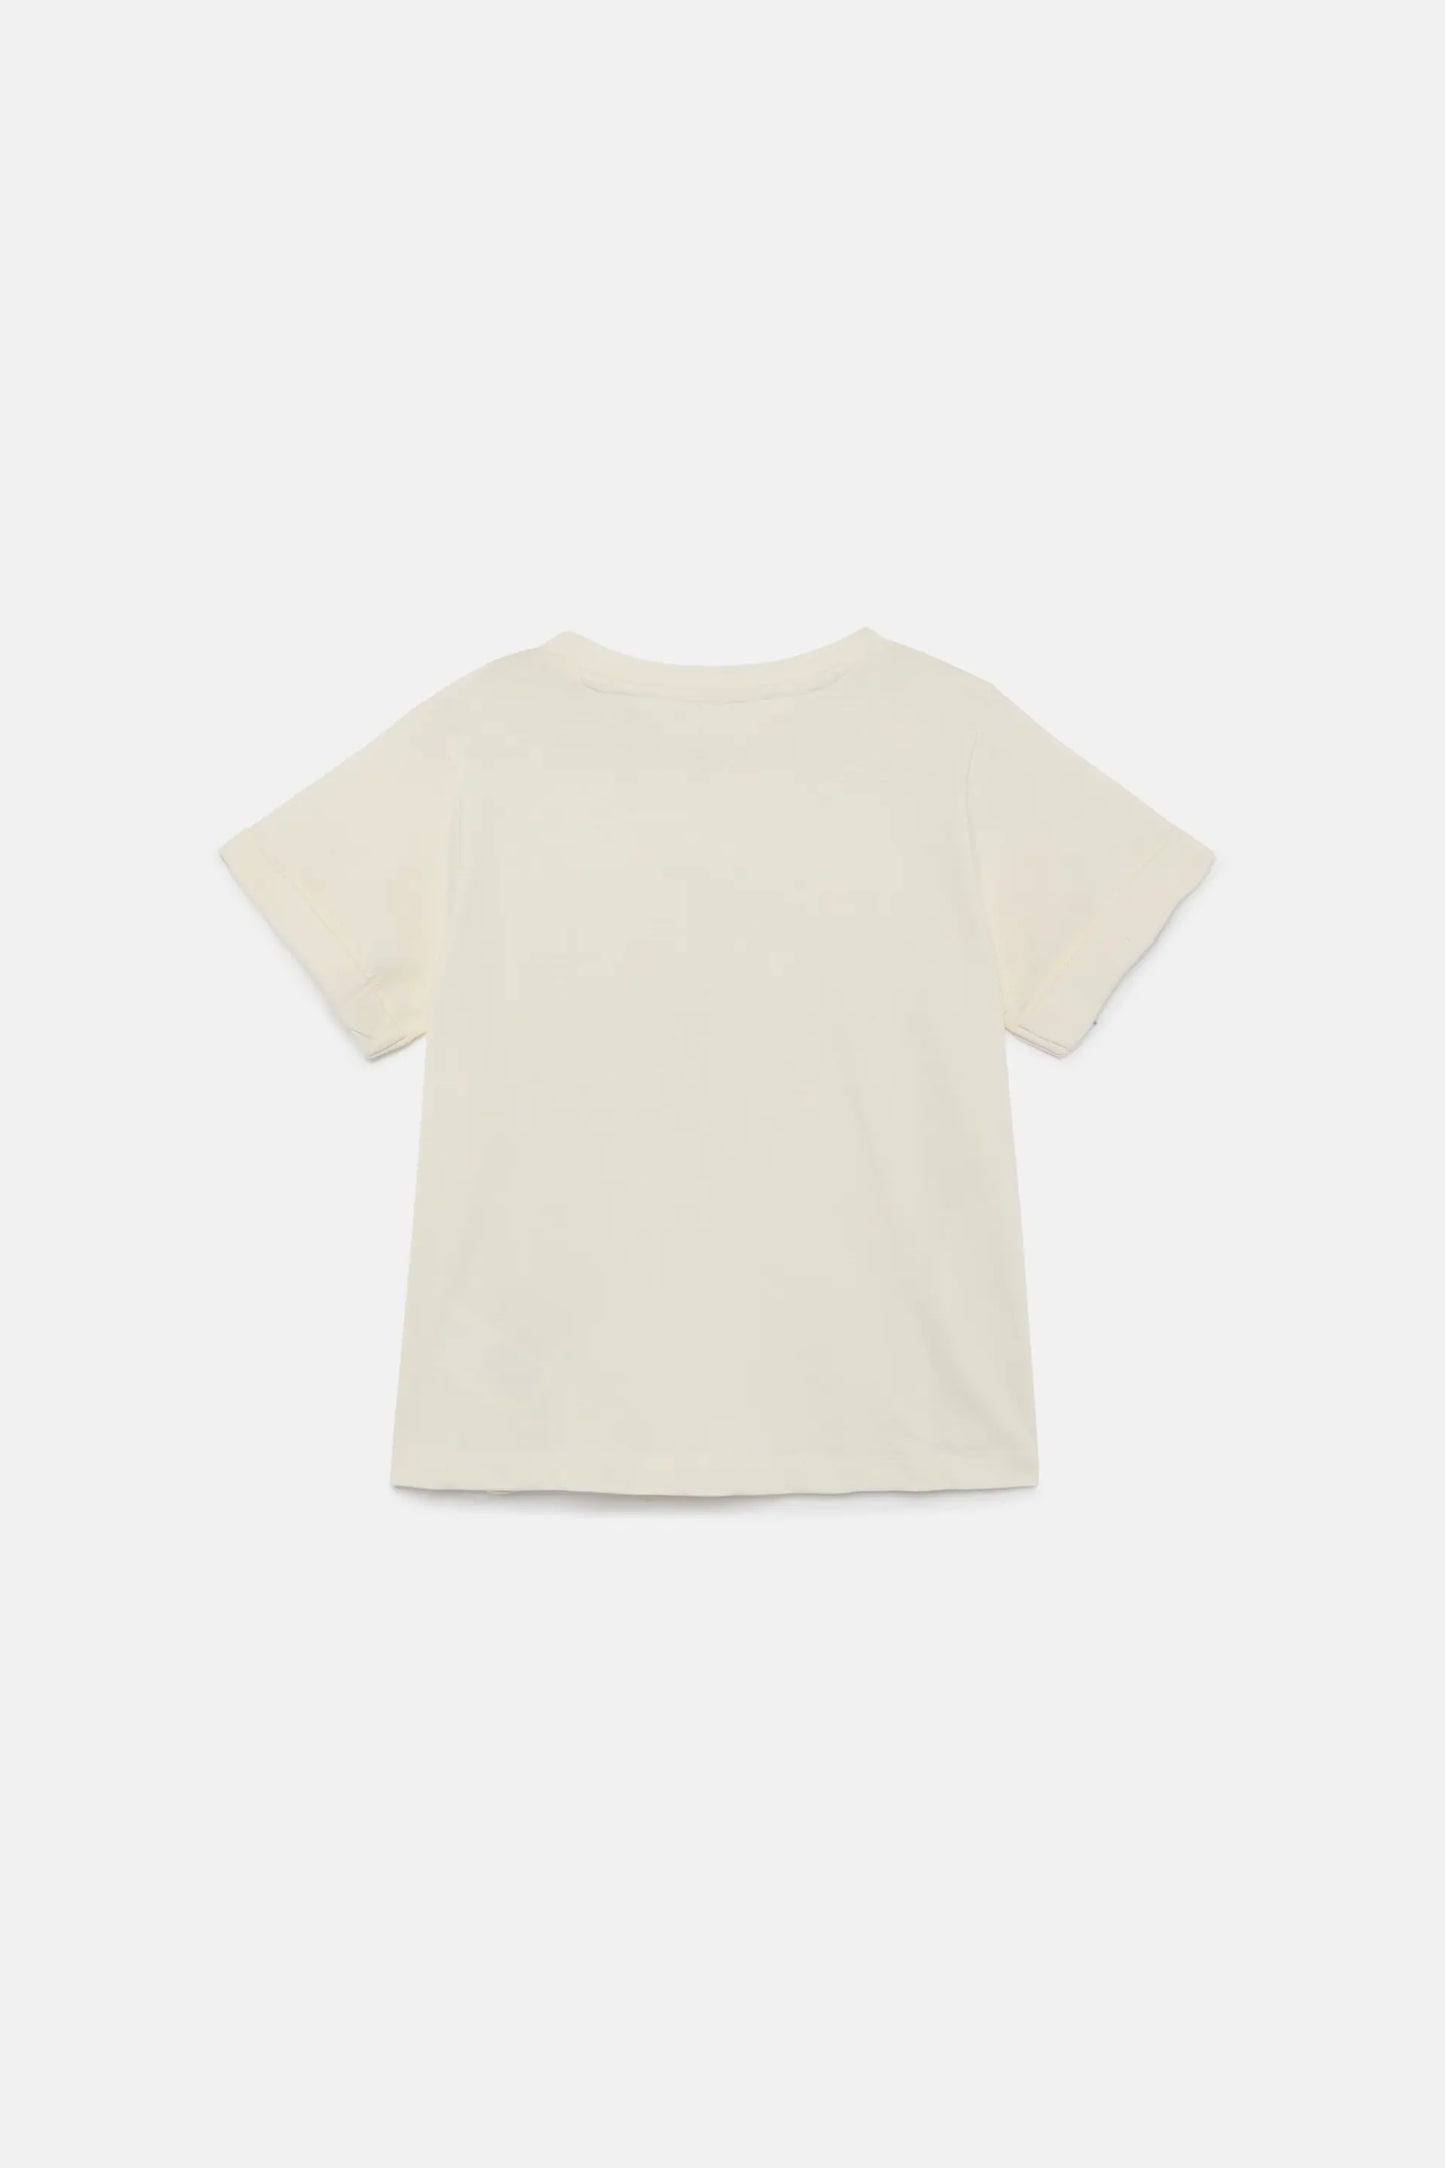 Camiseta unisex print Fantastica blanca